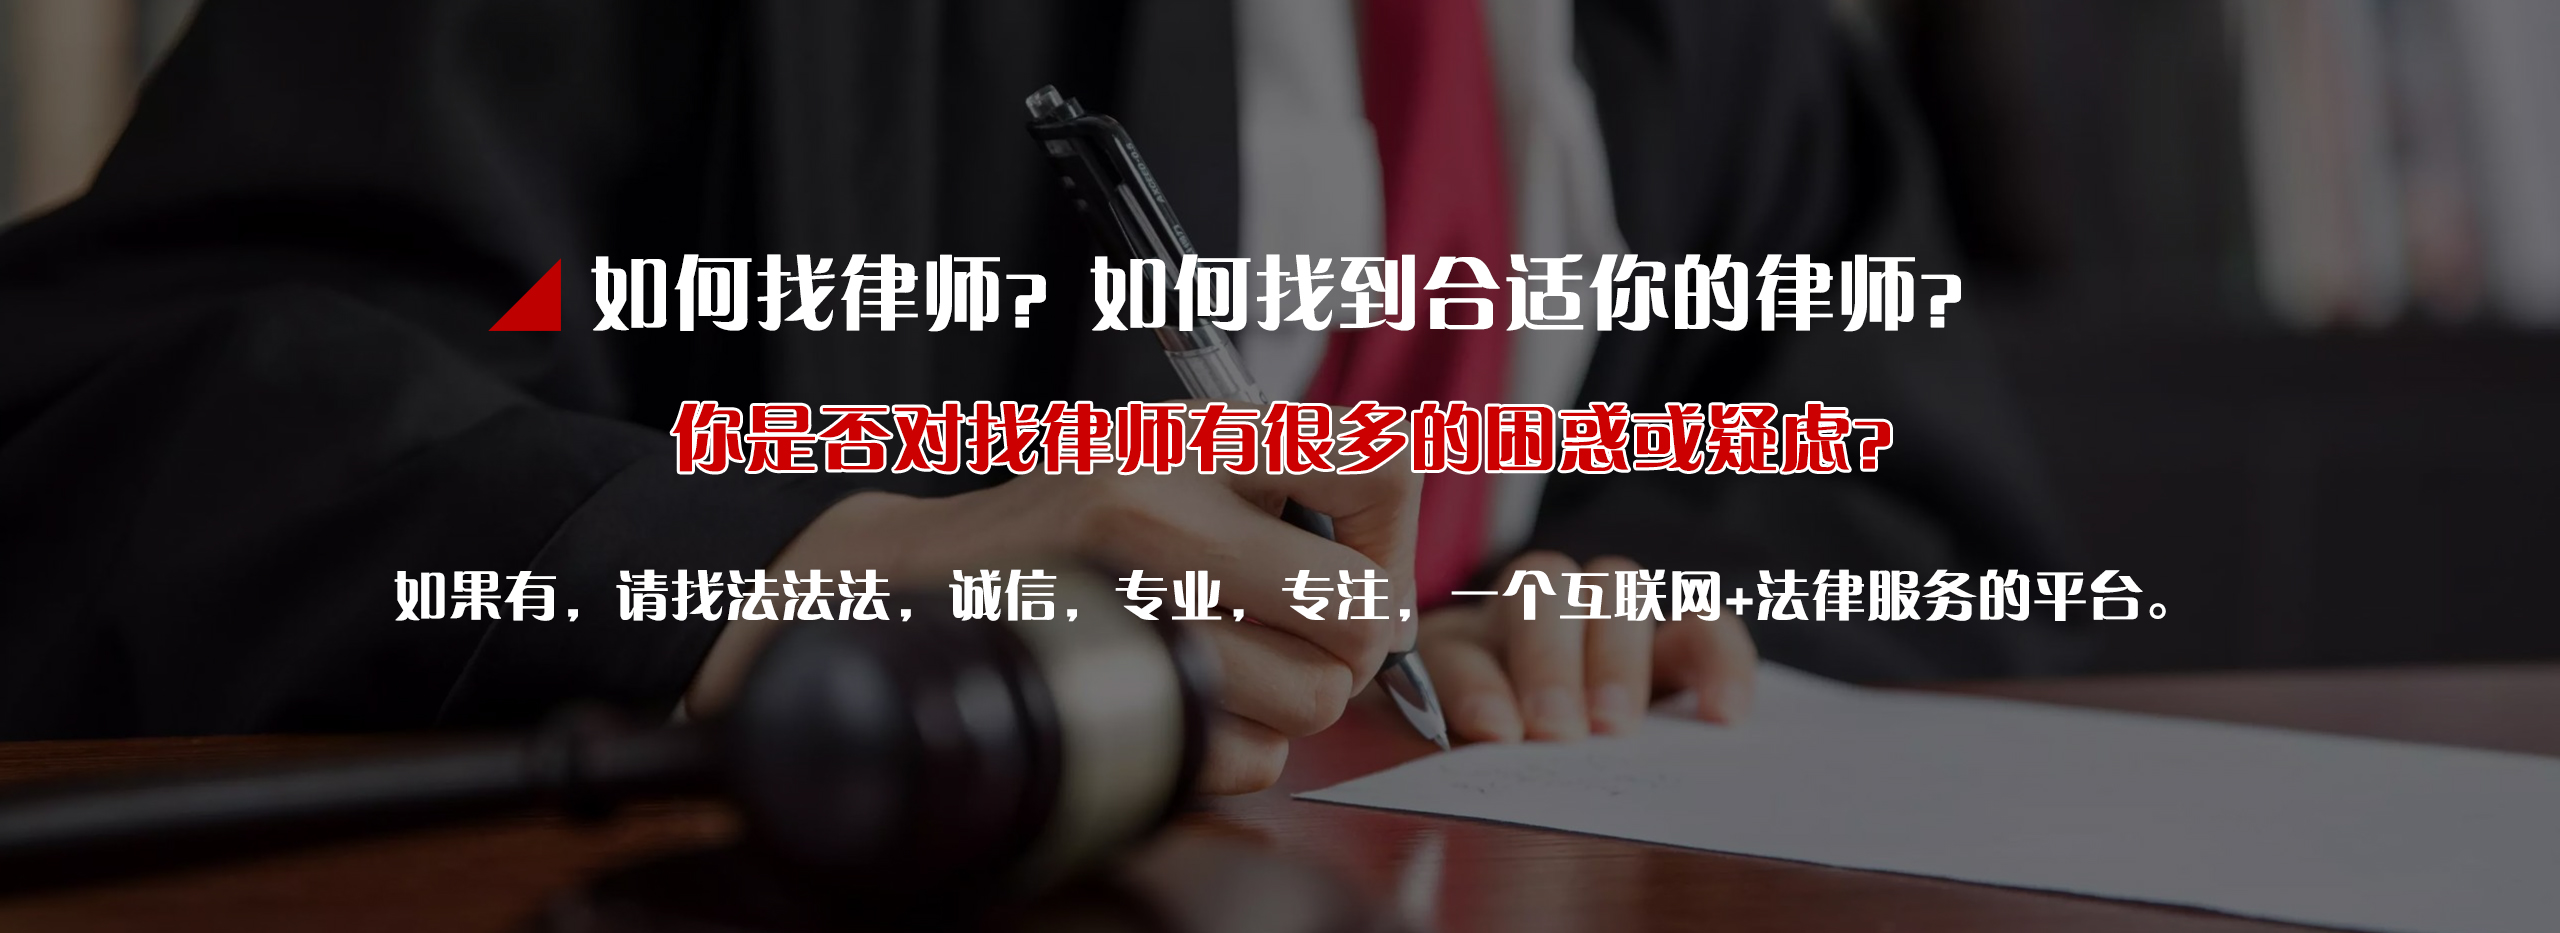 学校侵权法律服务_财产法律服务纠纷-四川法法法信息科技有限公司